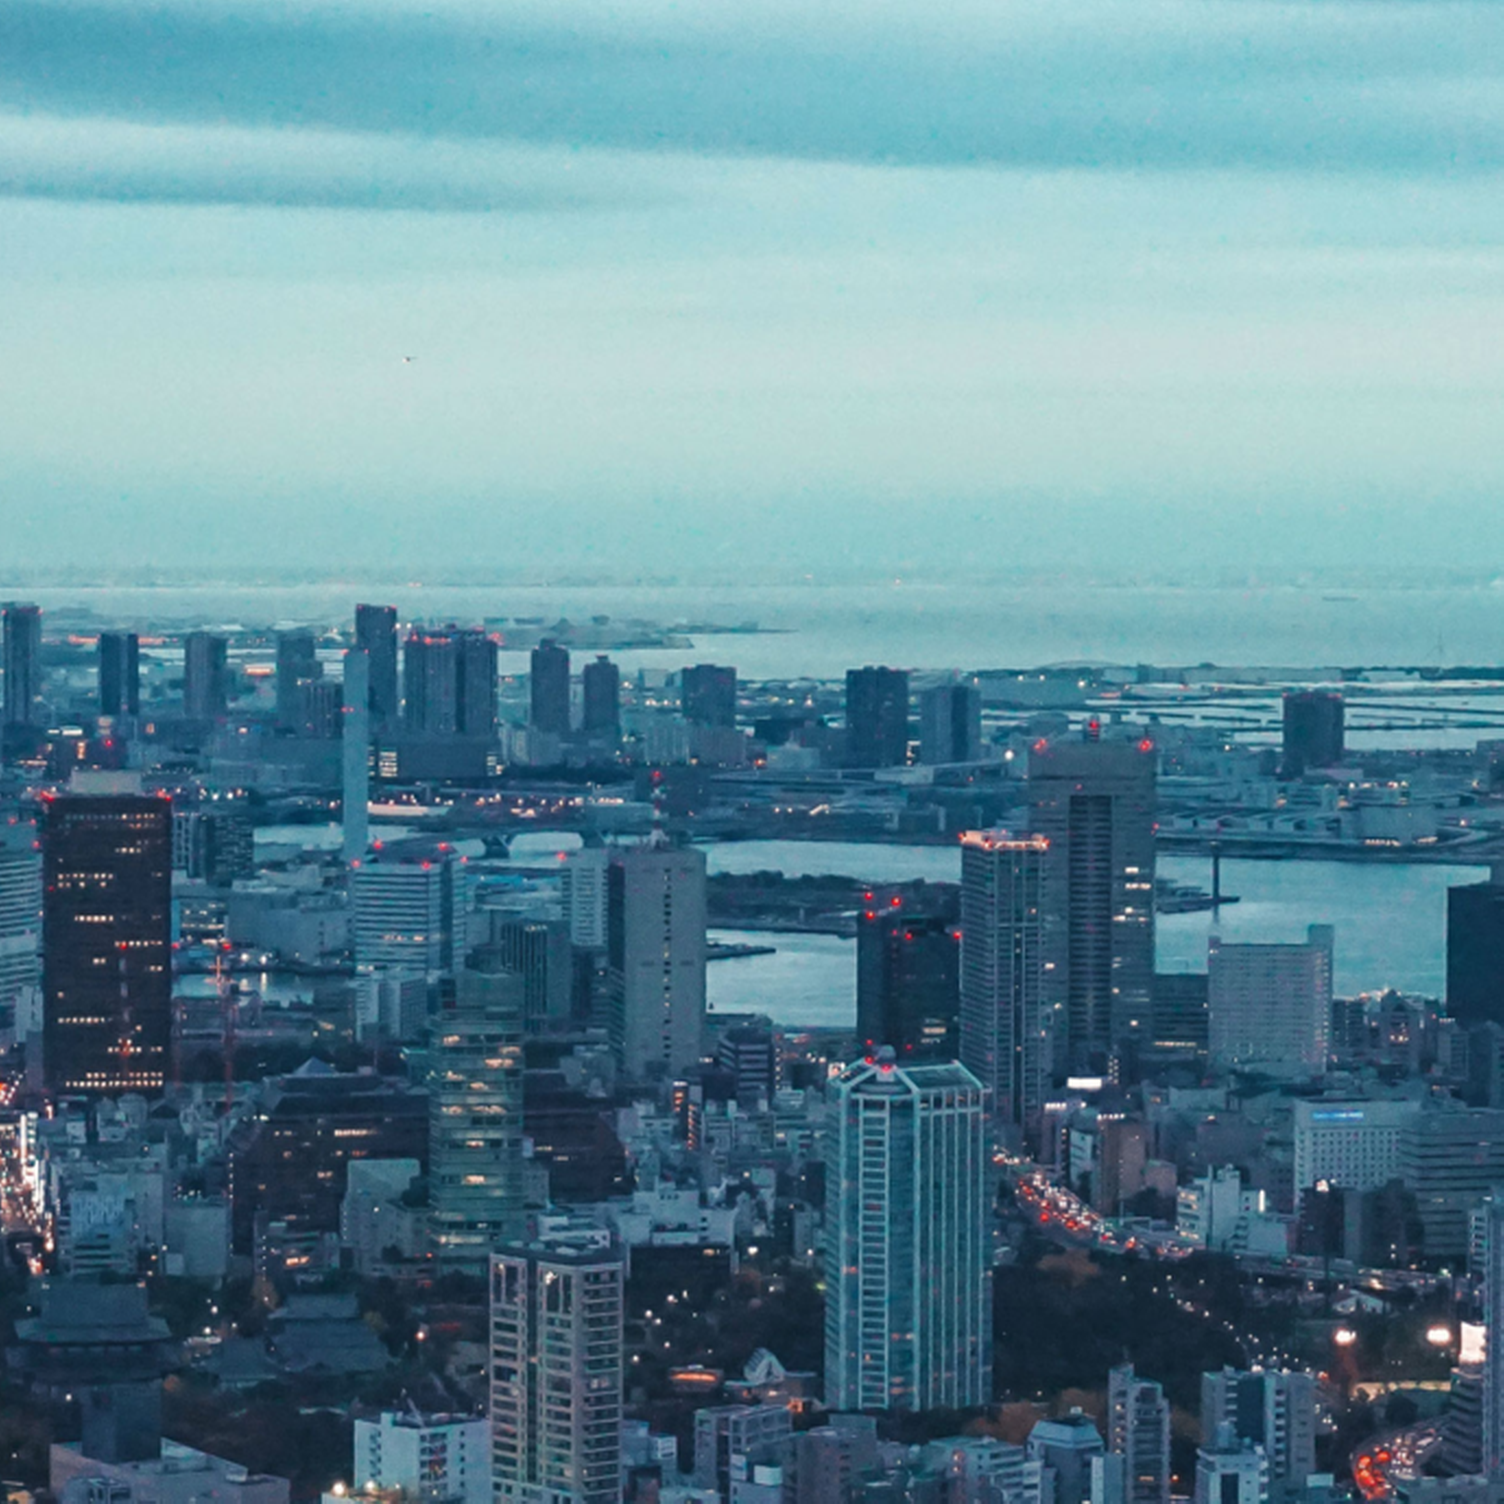 Panoramablick auf Tokio mit dem Tokyo Tower im Vordergrund